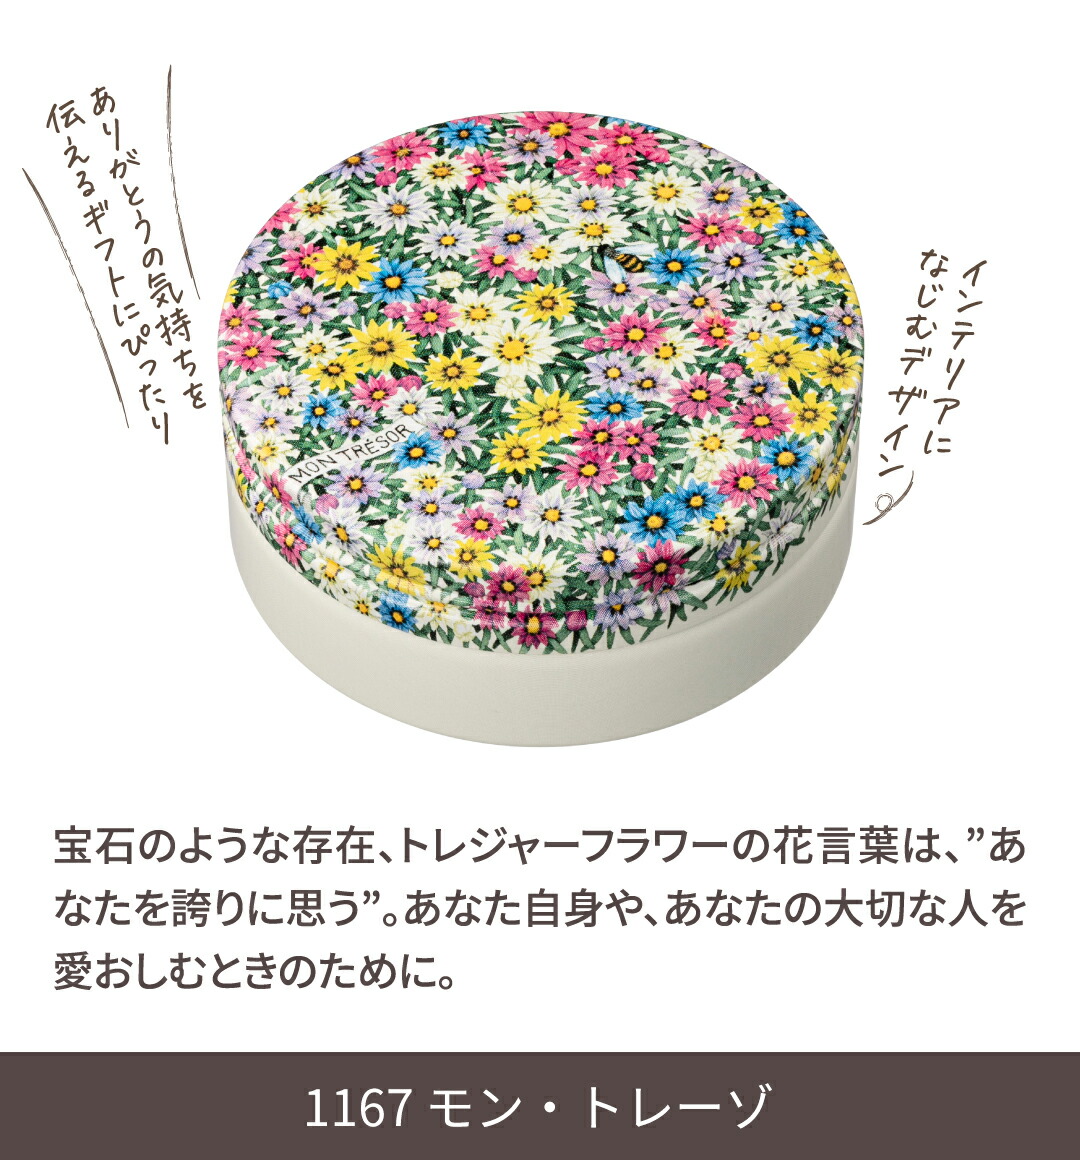 スチームクリーム 公式 26種 花柄 どうぶつ デザイン 日本製 ハンドクリーム ギフト コスメ ギ...